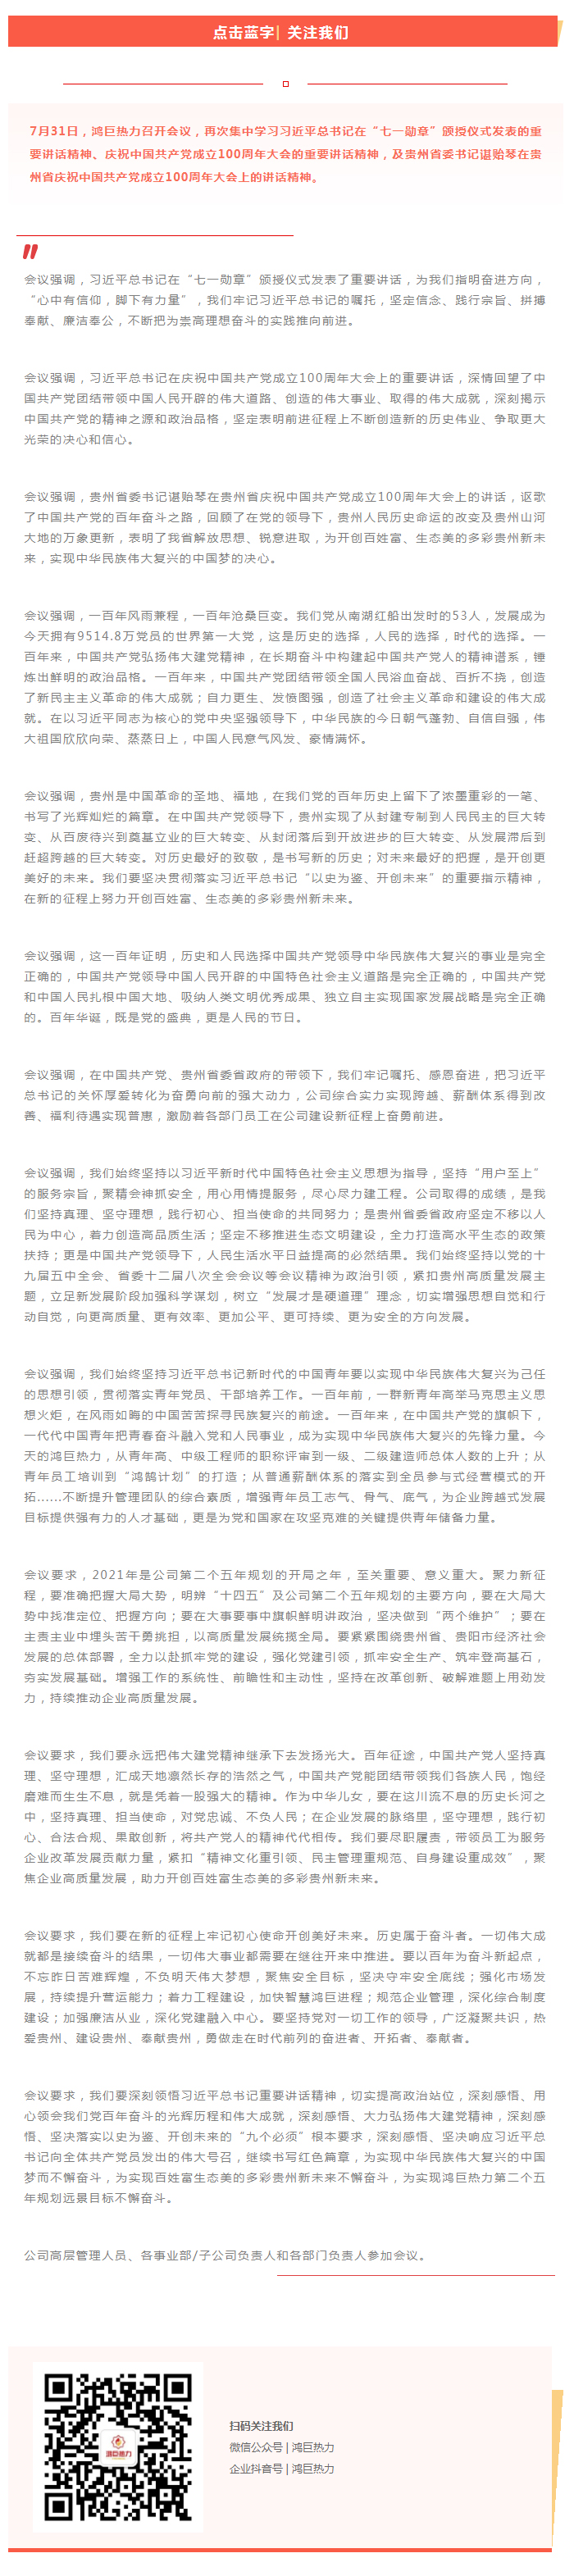 鸿巨热力集中学习习近平总书记在庆祝中国共产党成立100周年大会的重要讲话精神.jpg